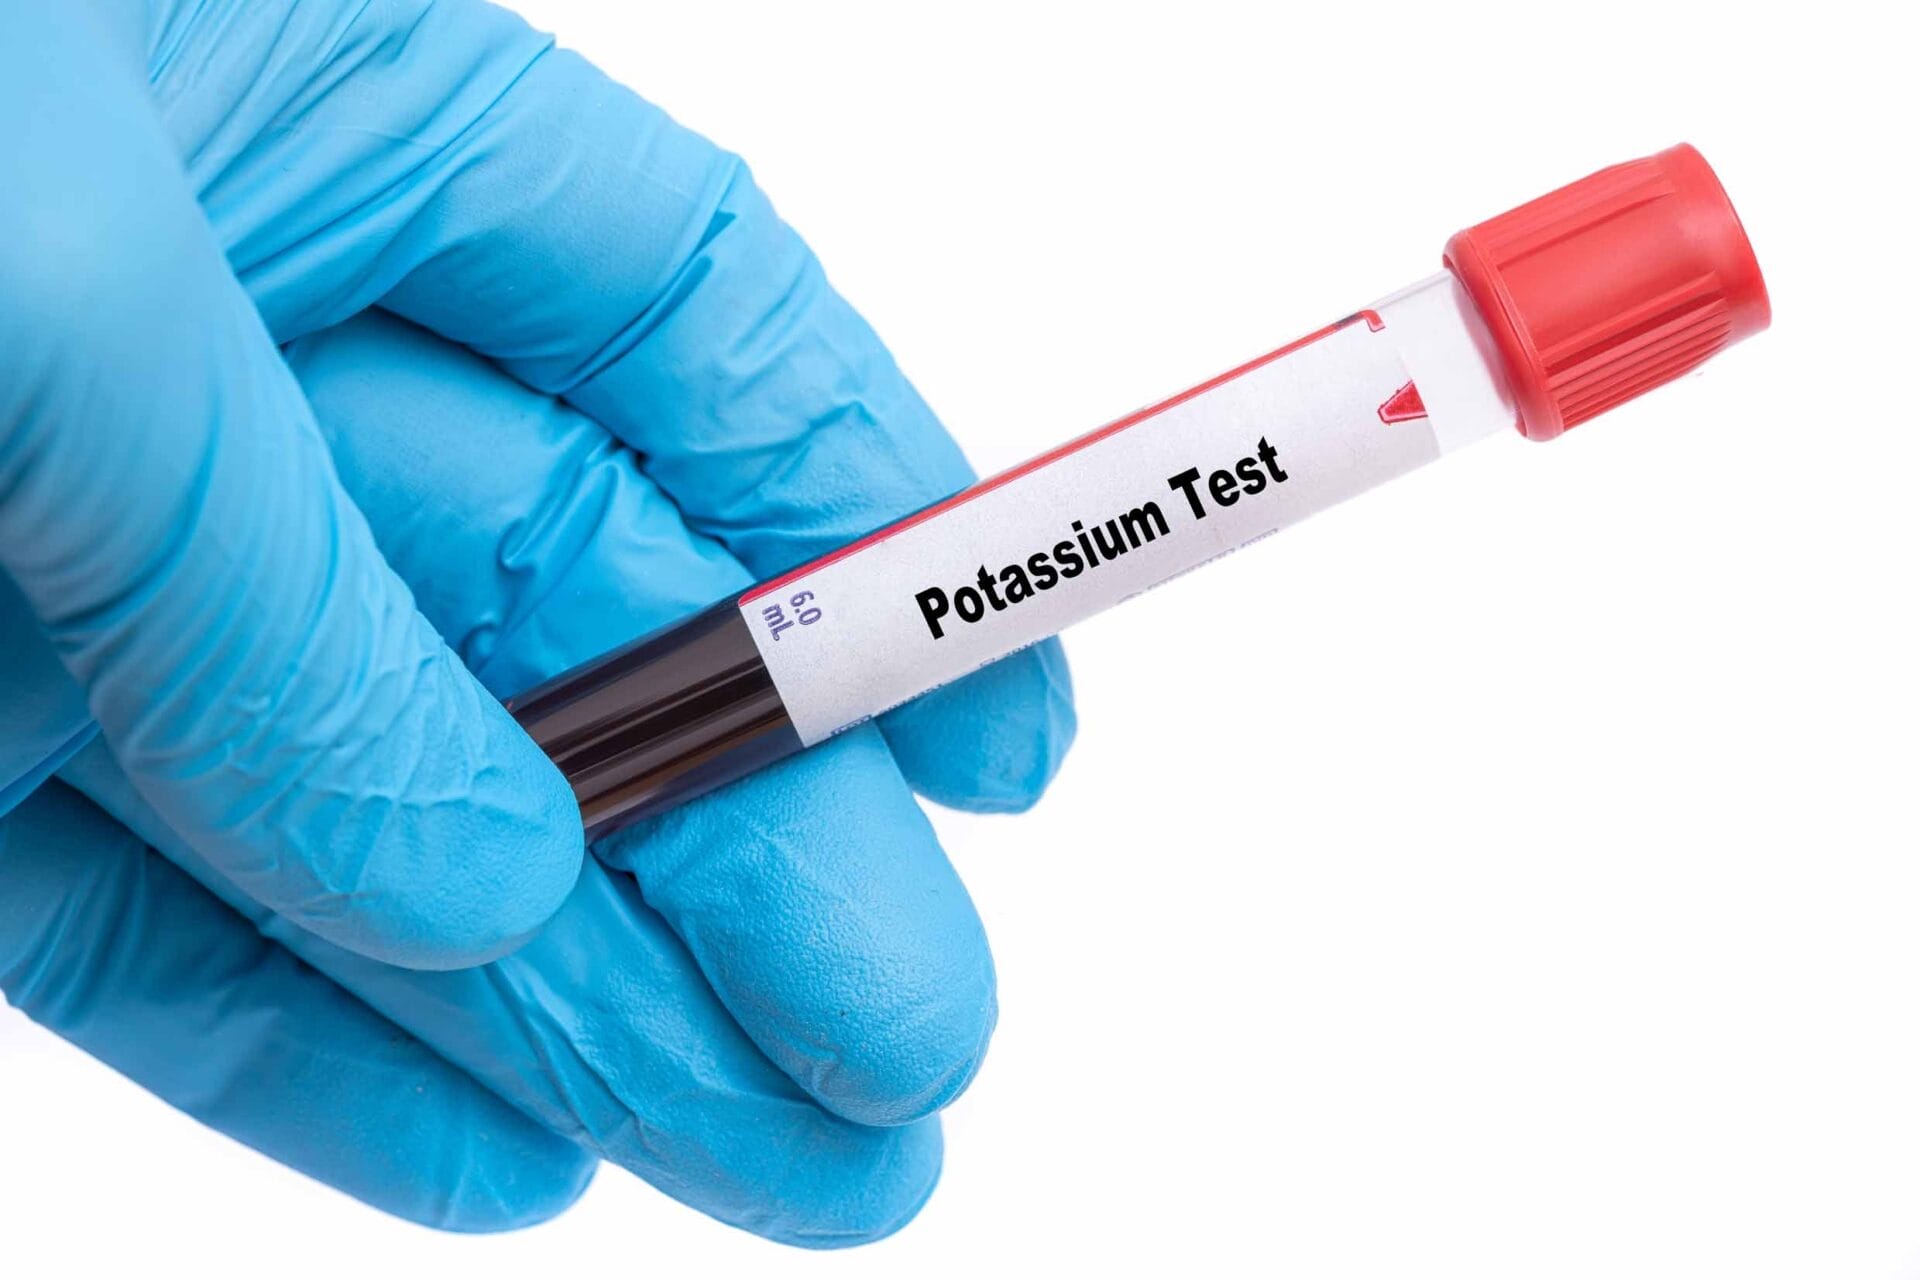 Potassium Serum Test in Delhi